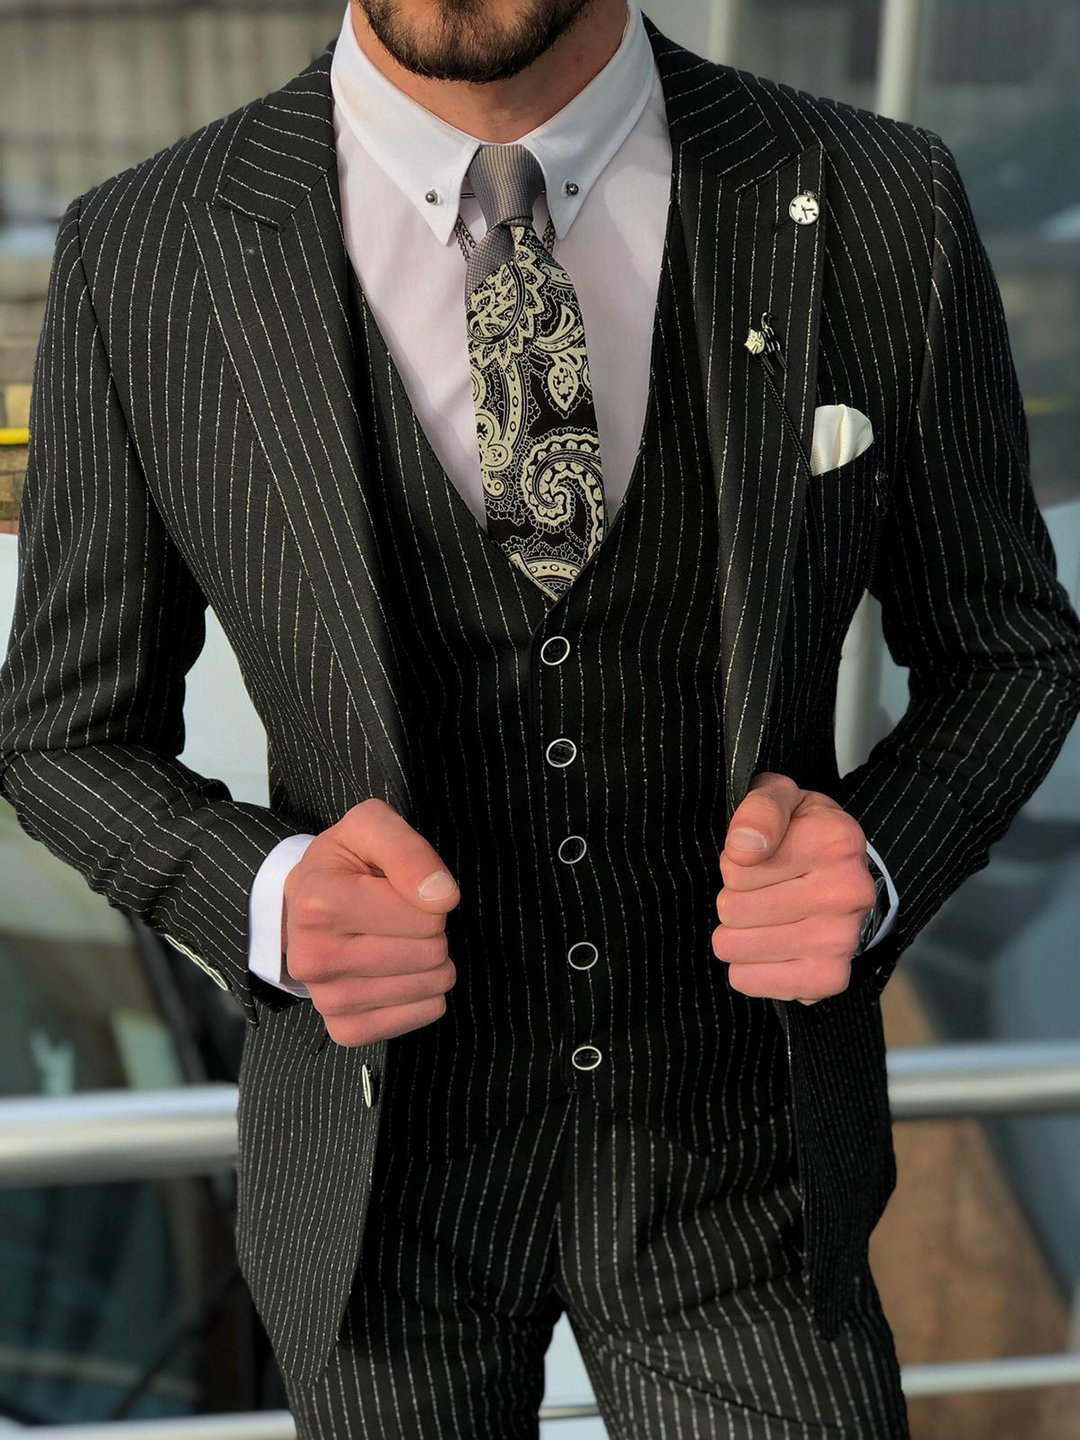 Best Ways To Wear A Men S Pinstripe Suit Suits Expert